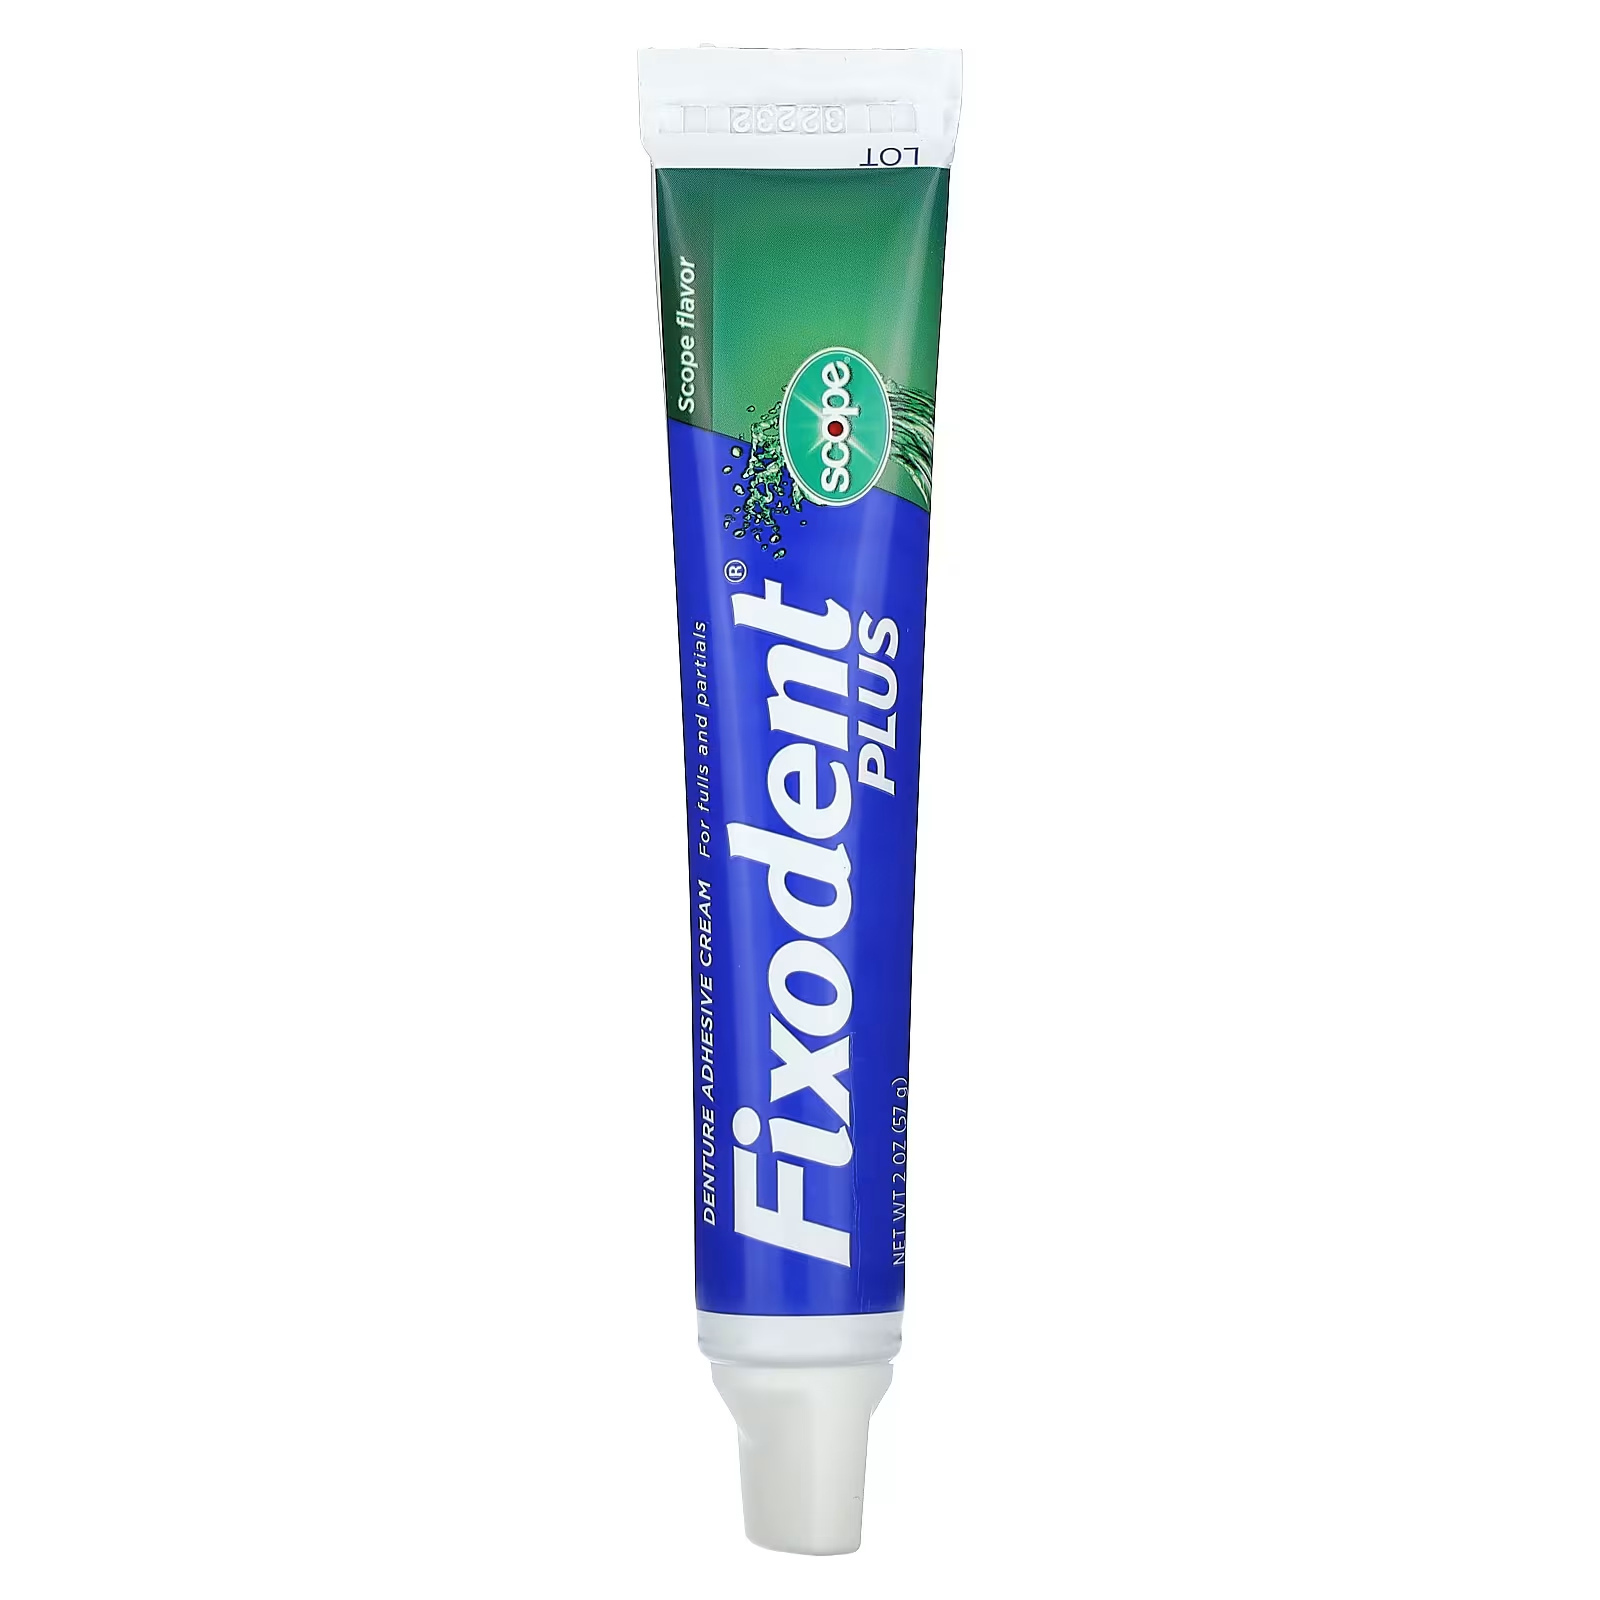 Стоматологический клей-крем Fixodent Plus, 2 унции (57 г) fixodent plus зубной адгезивный крем ароматизатор scope 57 г 2 унции